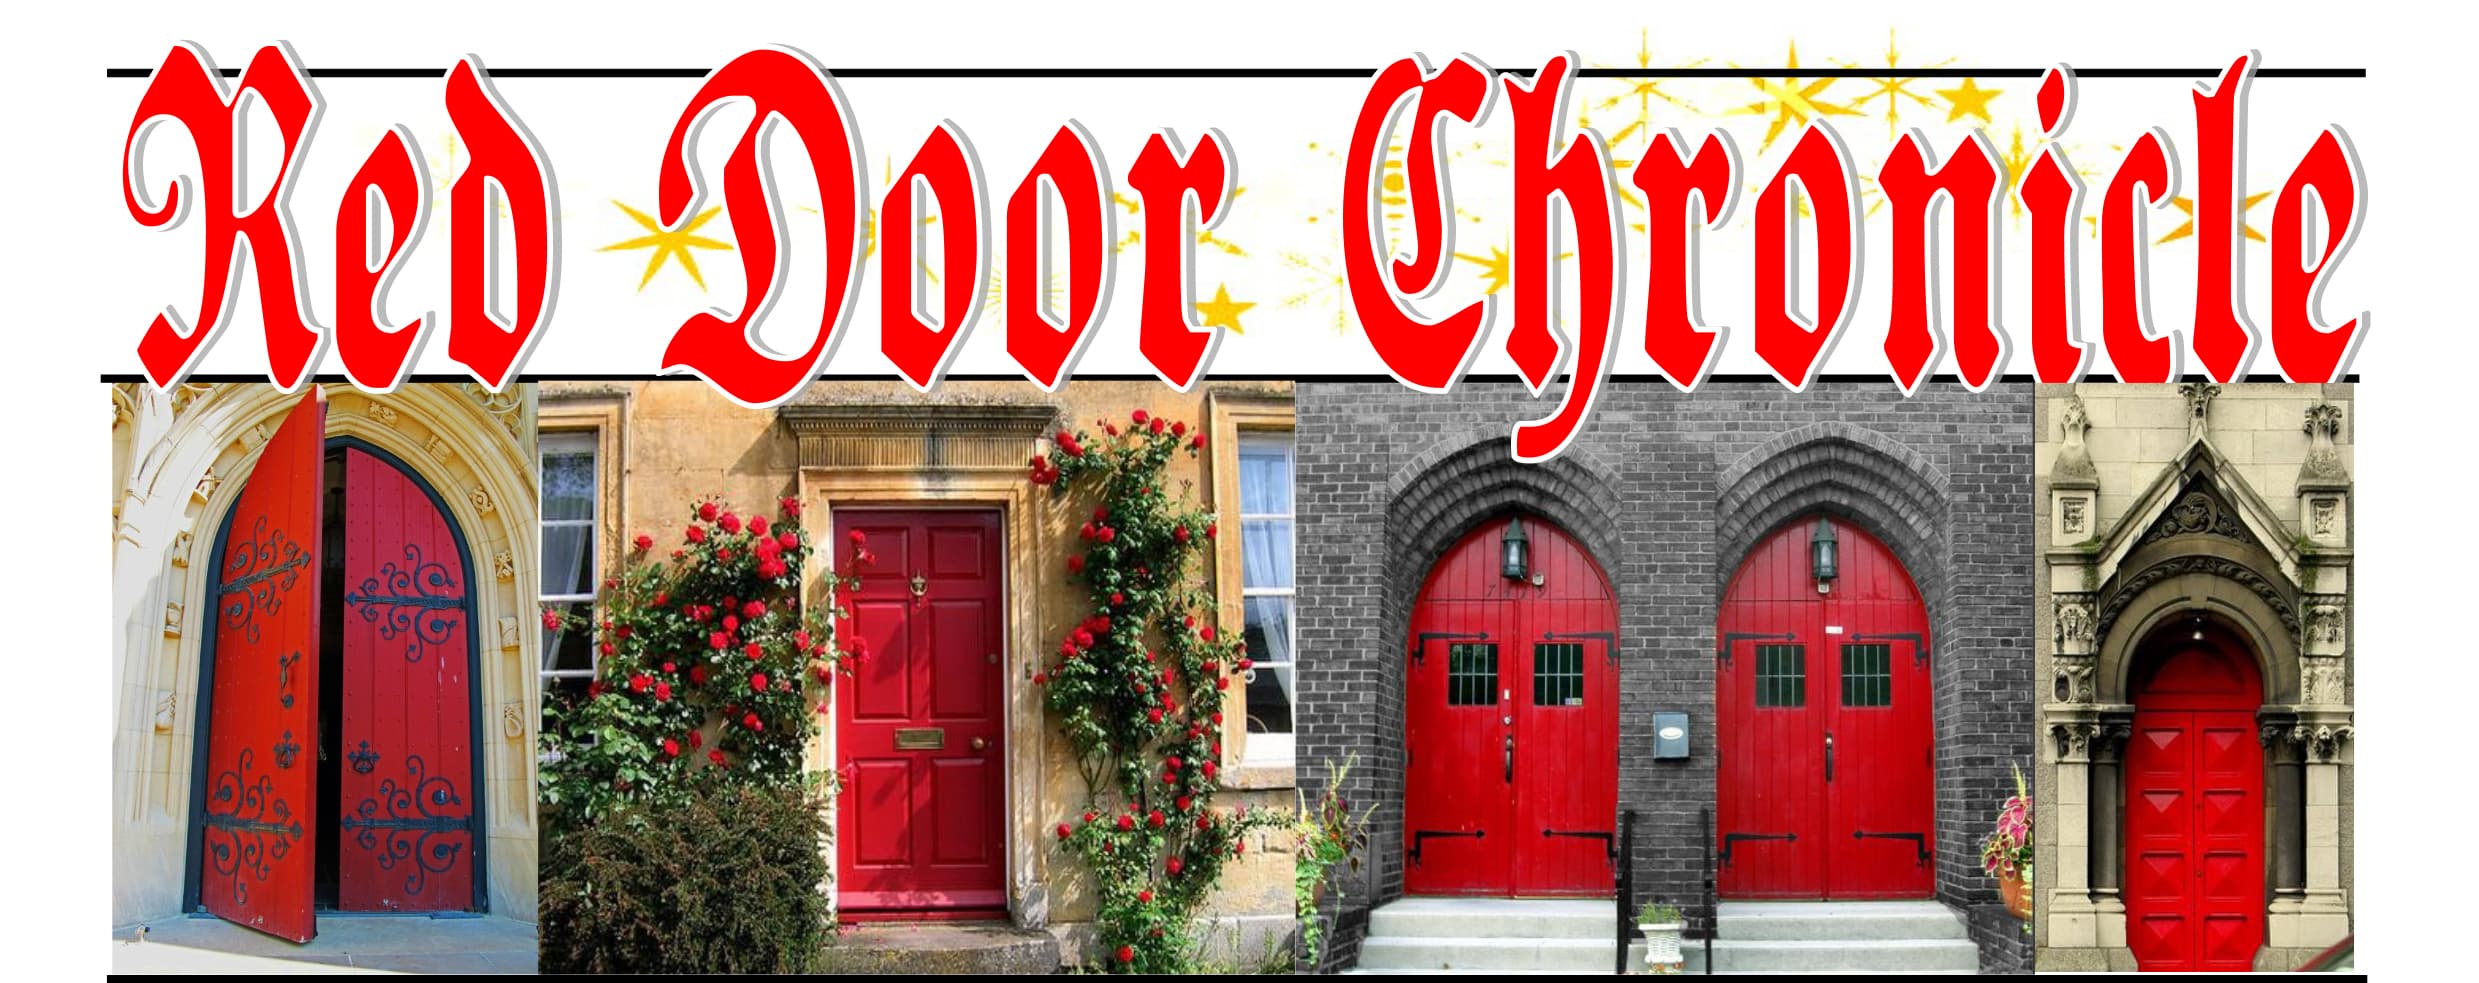 Red Door Chronicle